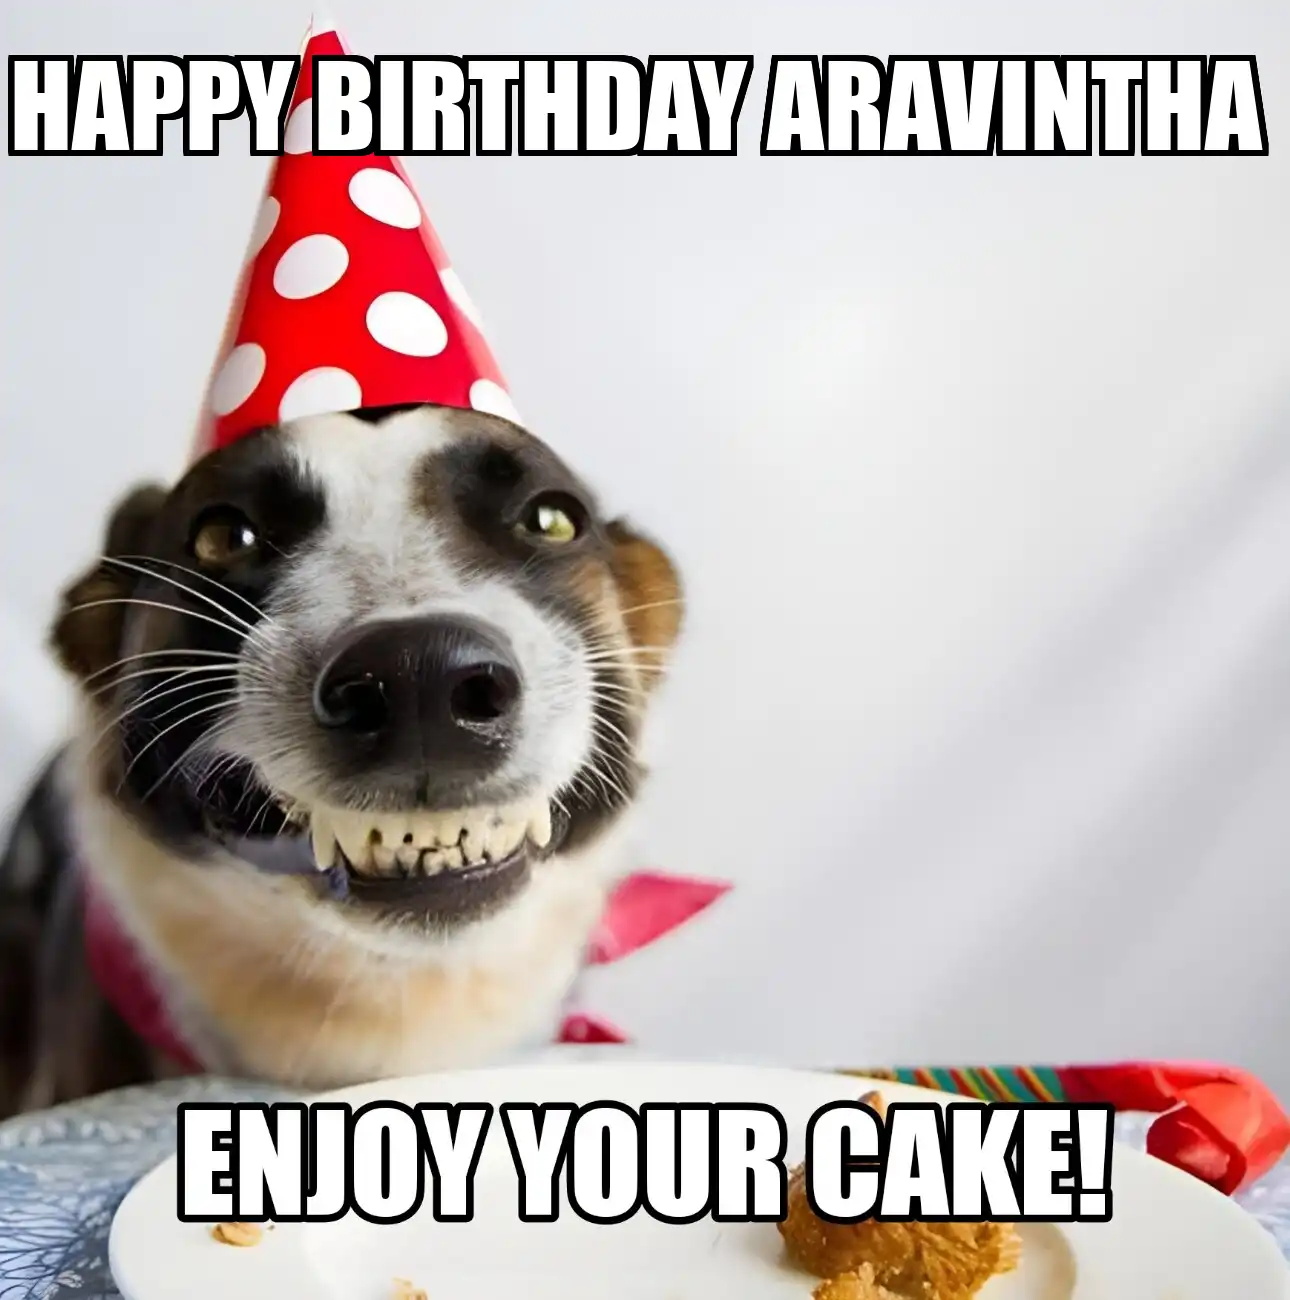 Happy Birthday Aravintha Enjoy Your Cake Dog Meme